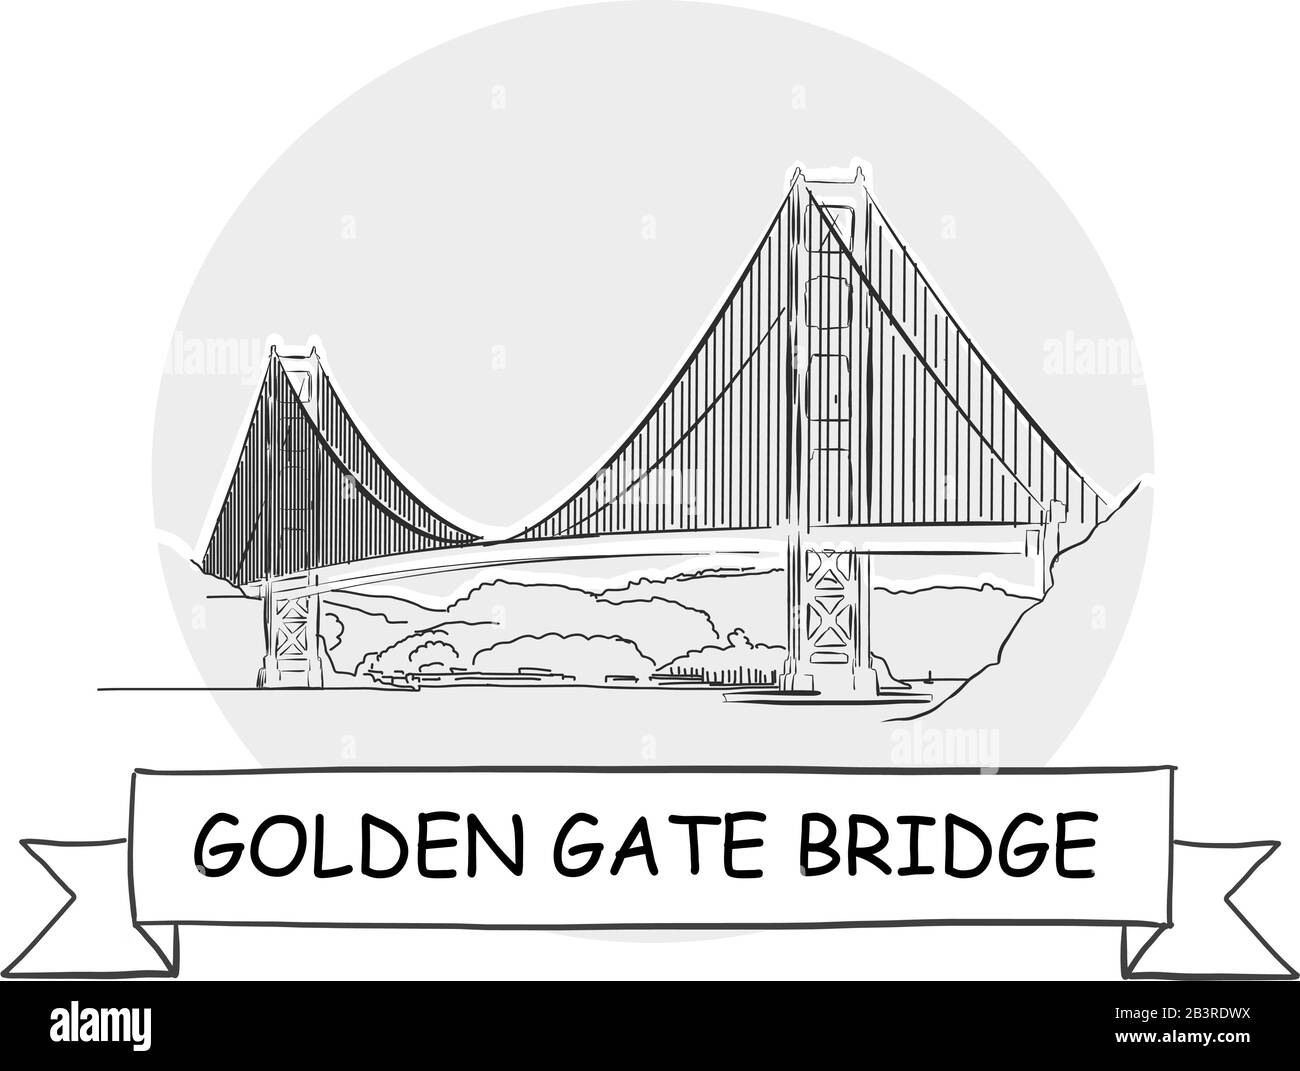 Golden Gate Bridge Disegnato A Mano Urban Vector Sign. Illustrazione Della Linea Nera Con Barra Multifunzione E Titolo. Illustrazione Vettoriale